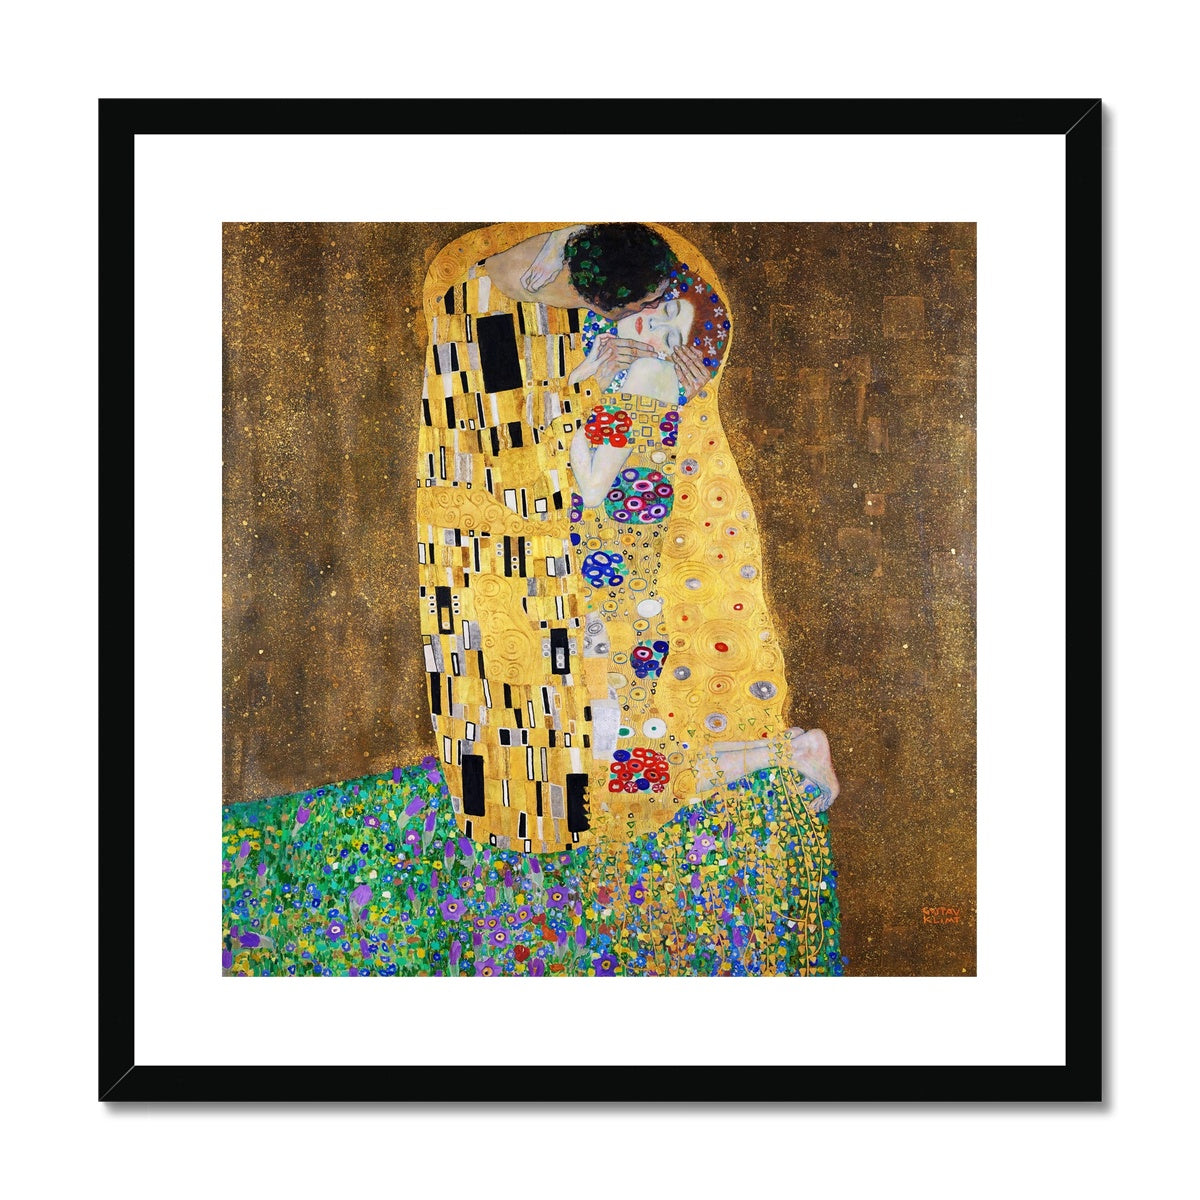 Gustav Klimt Framed Open Edition Art Print. 'The Kiss'. Art Gallery Historic Art